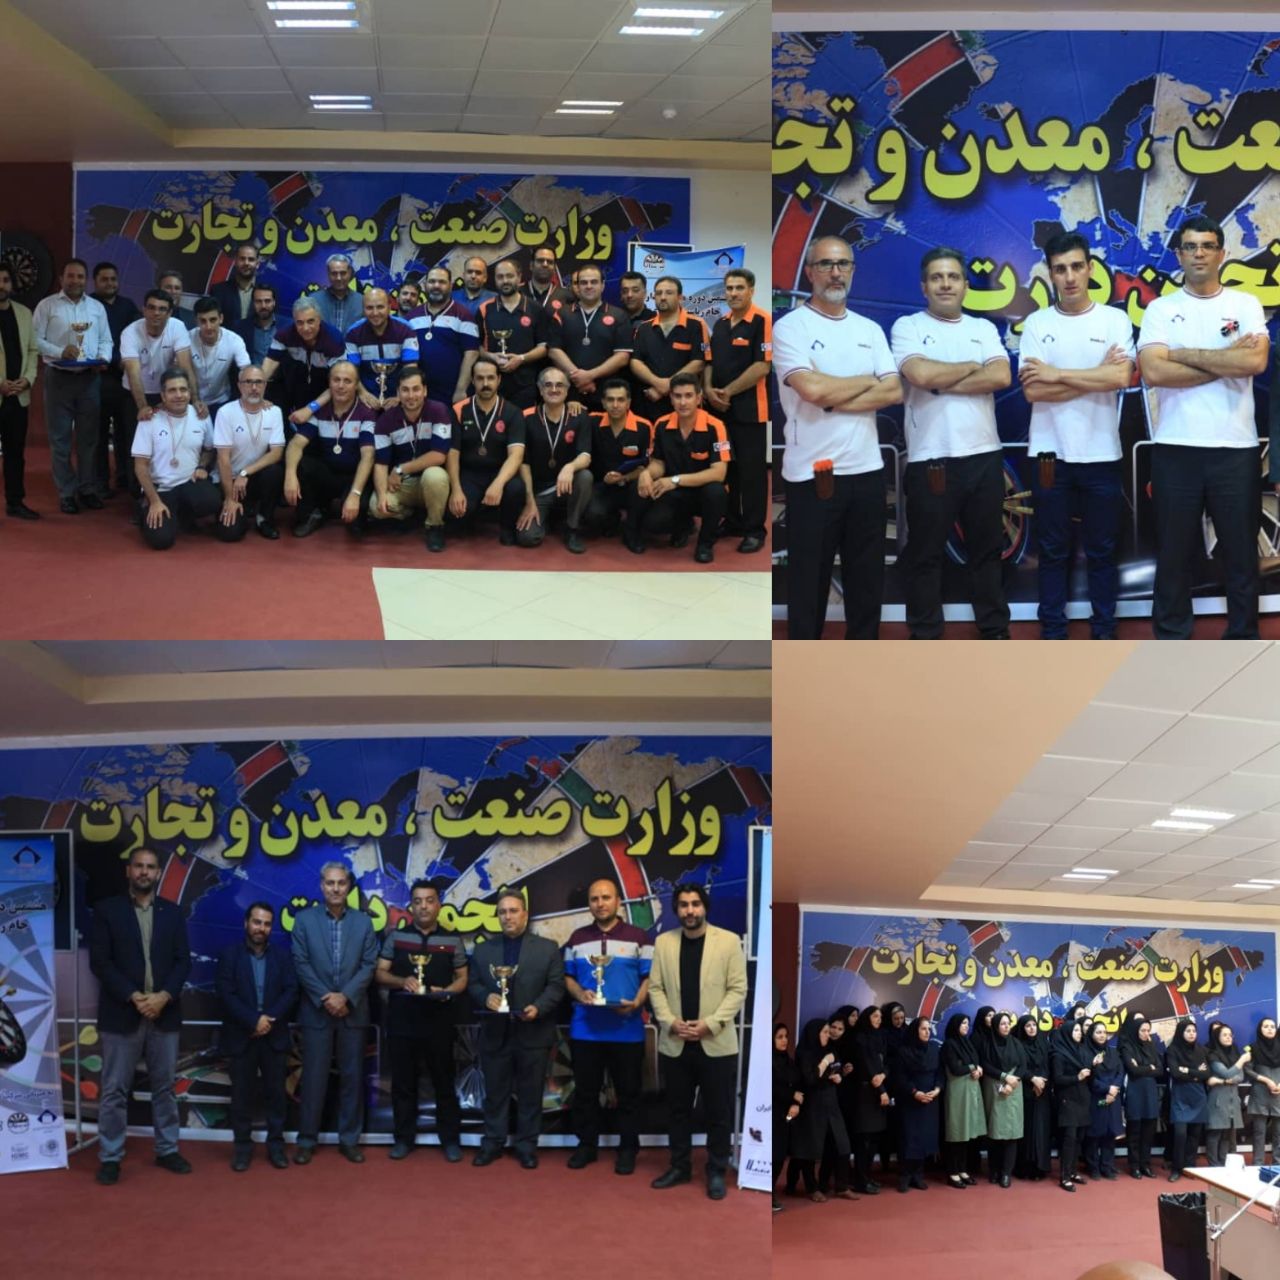 کسب مقام نایب قهرمانی مسابقات دارت جام ریاست جمهوری توسط شرکت تهیه و تولید مواد معدنی ایران